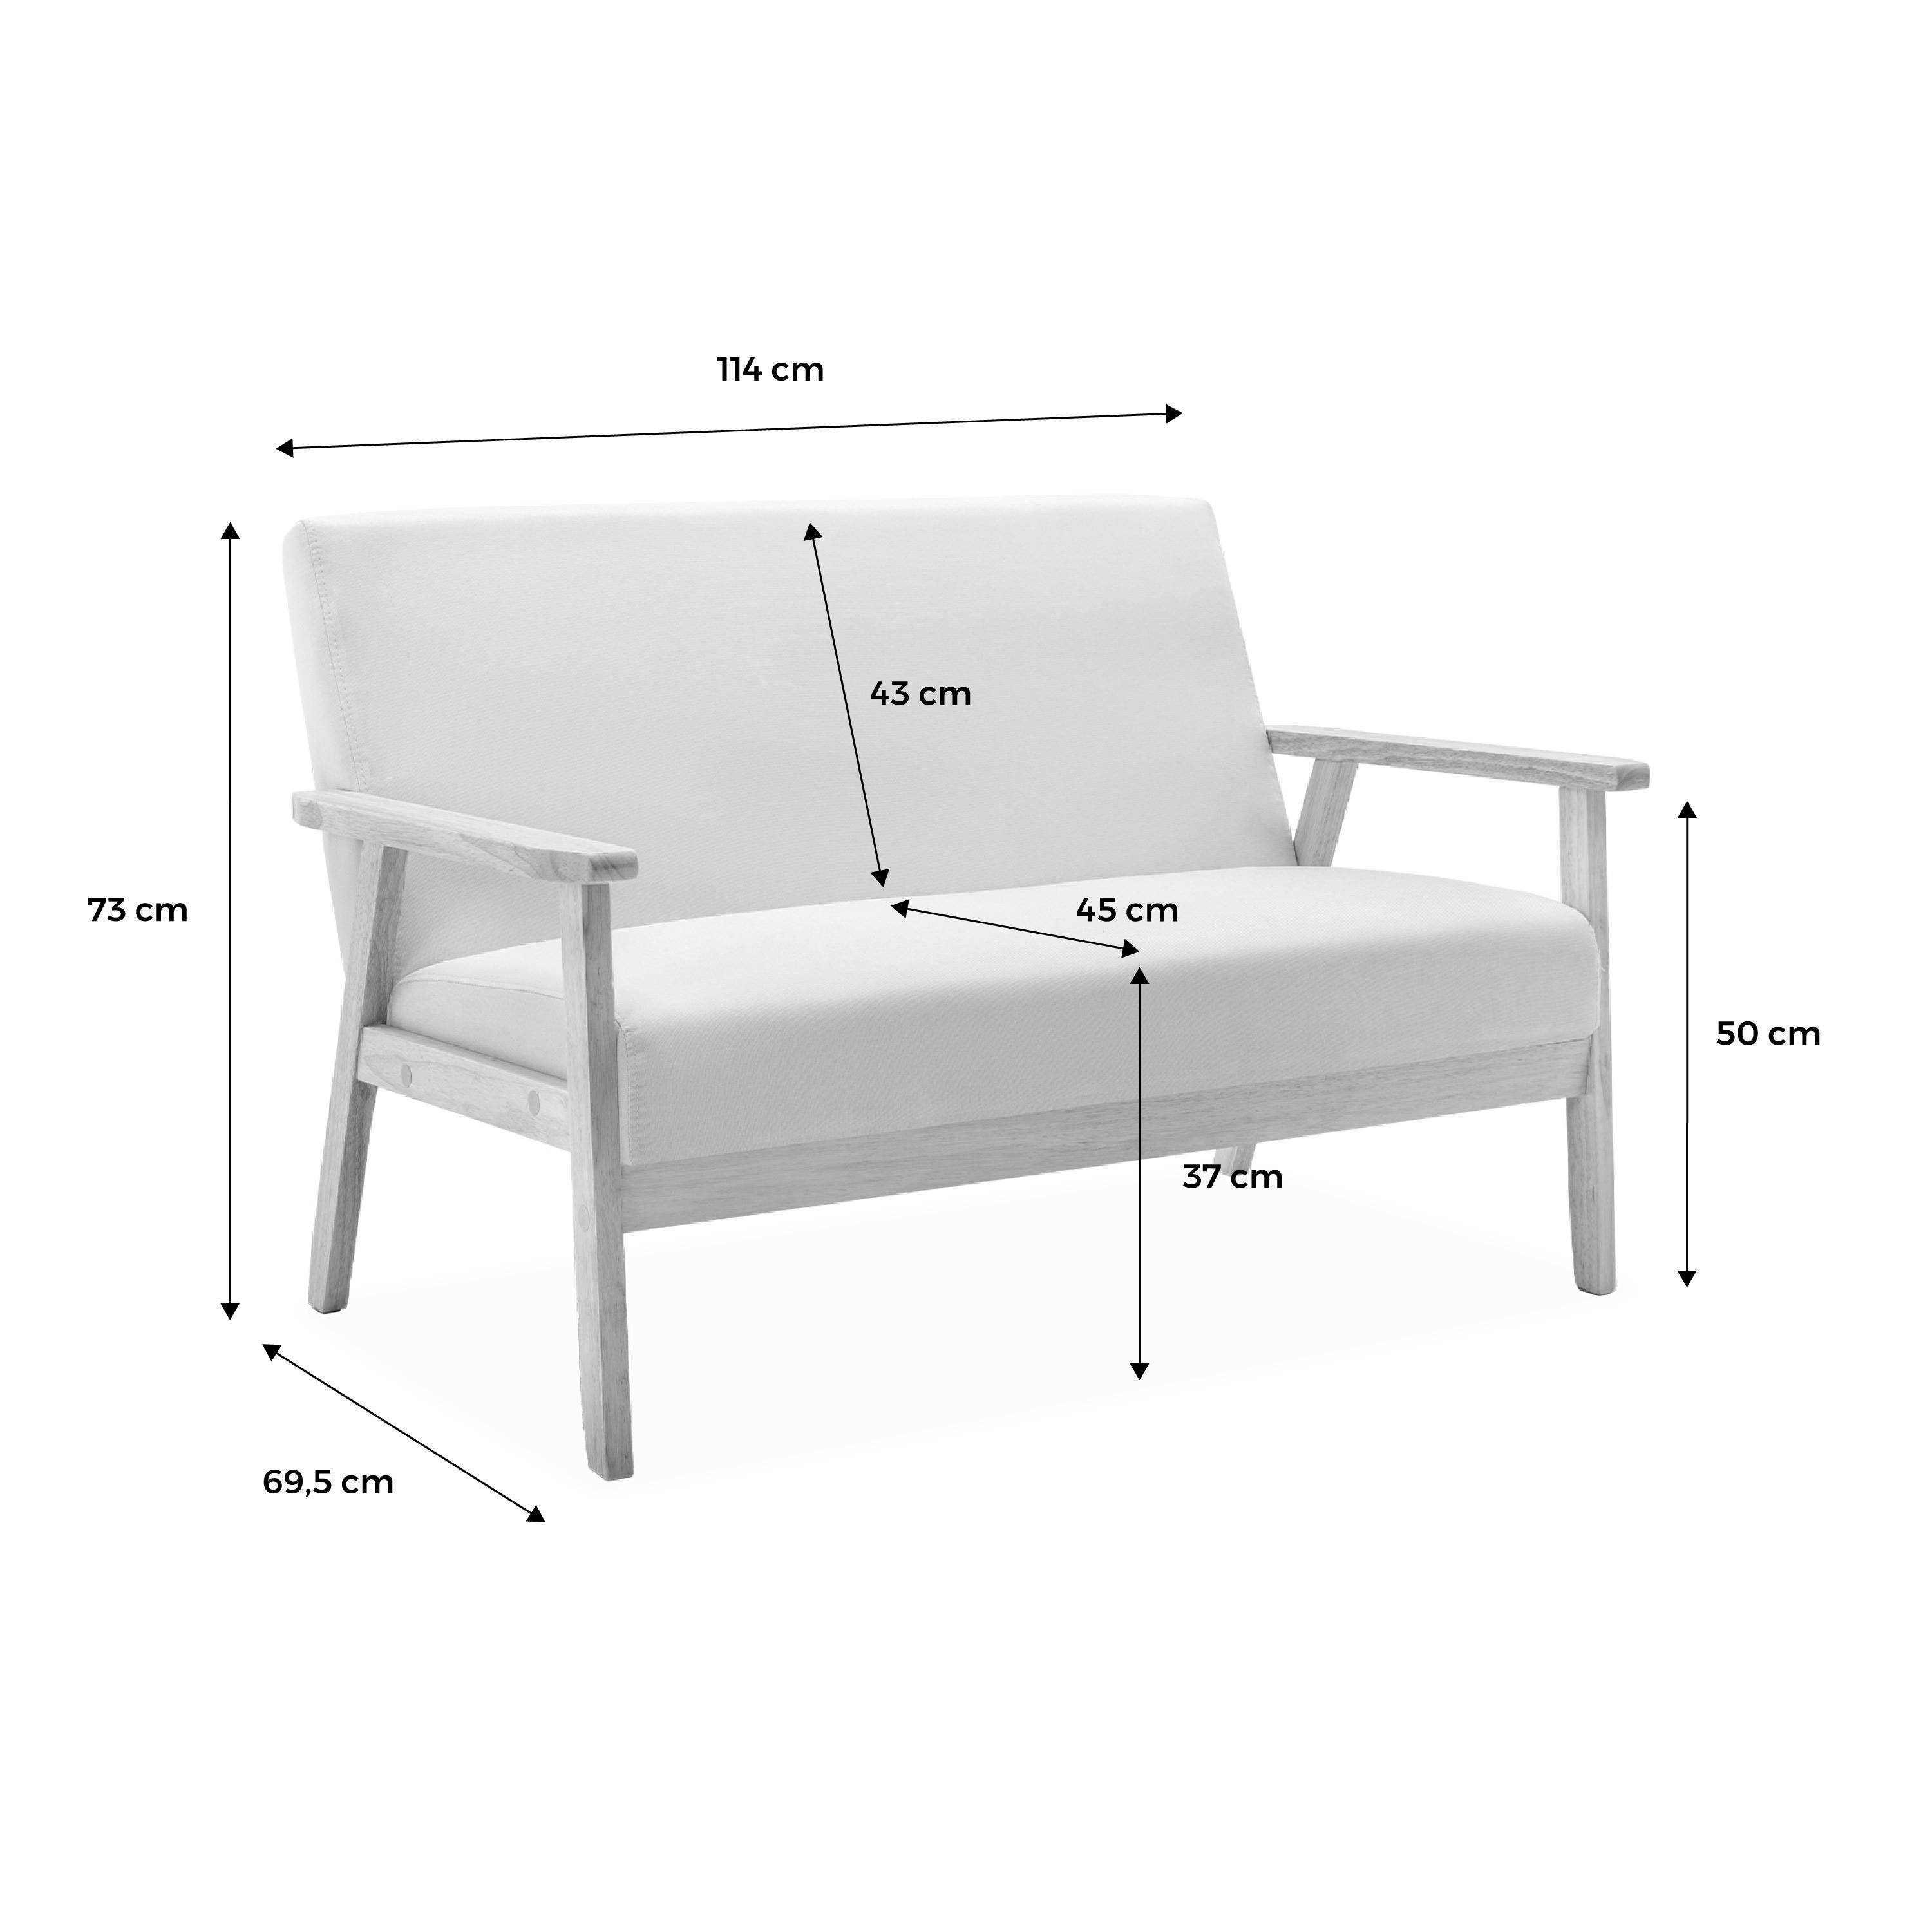 Banquette et fauteuil en bois et tissu gris foncé, Isak, L 114 x l 69,5 x H 73cm,sweeek,Photo8